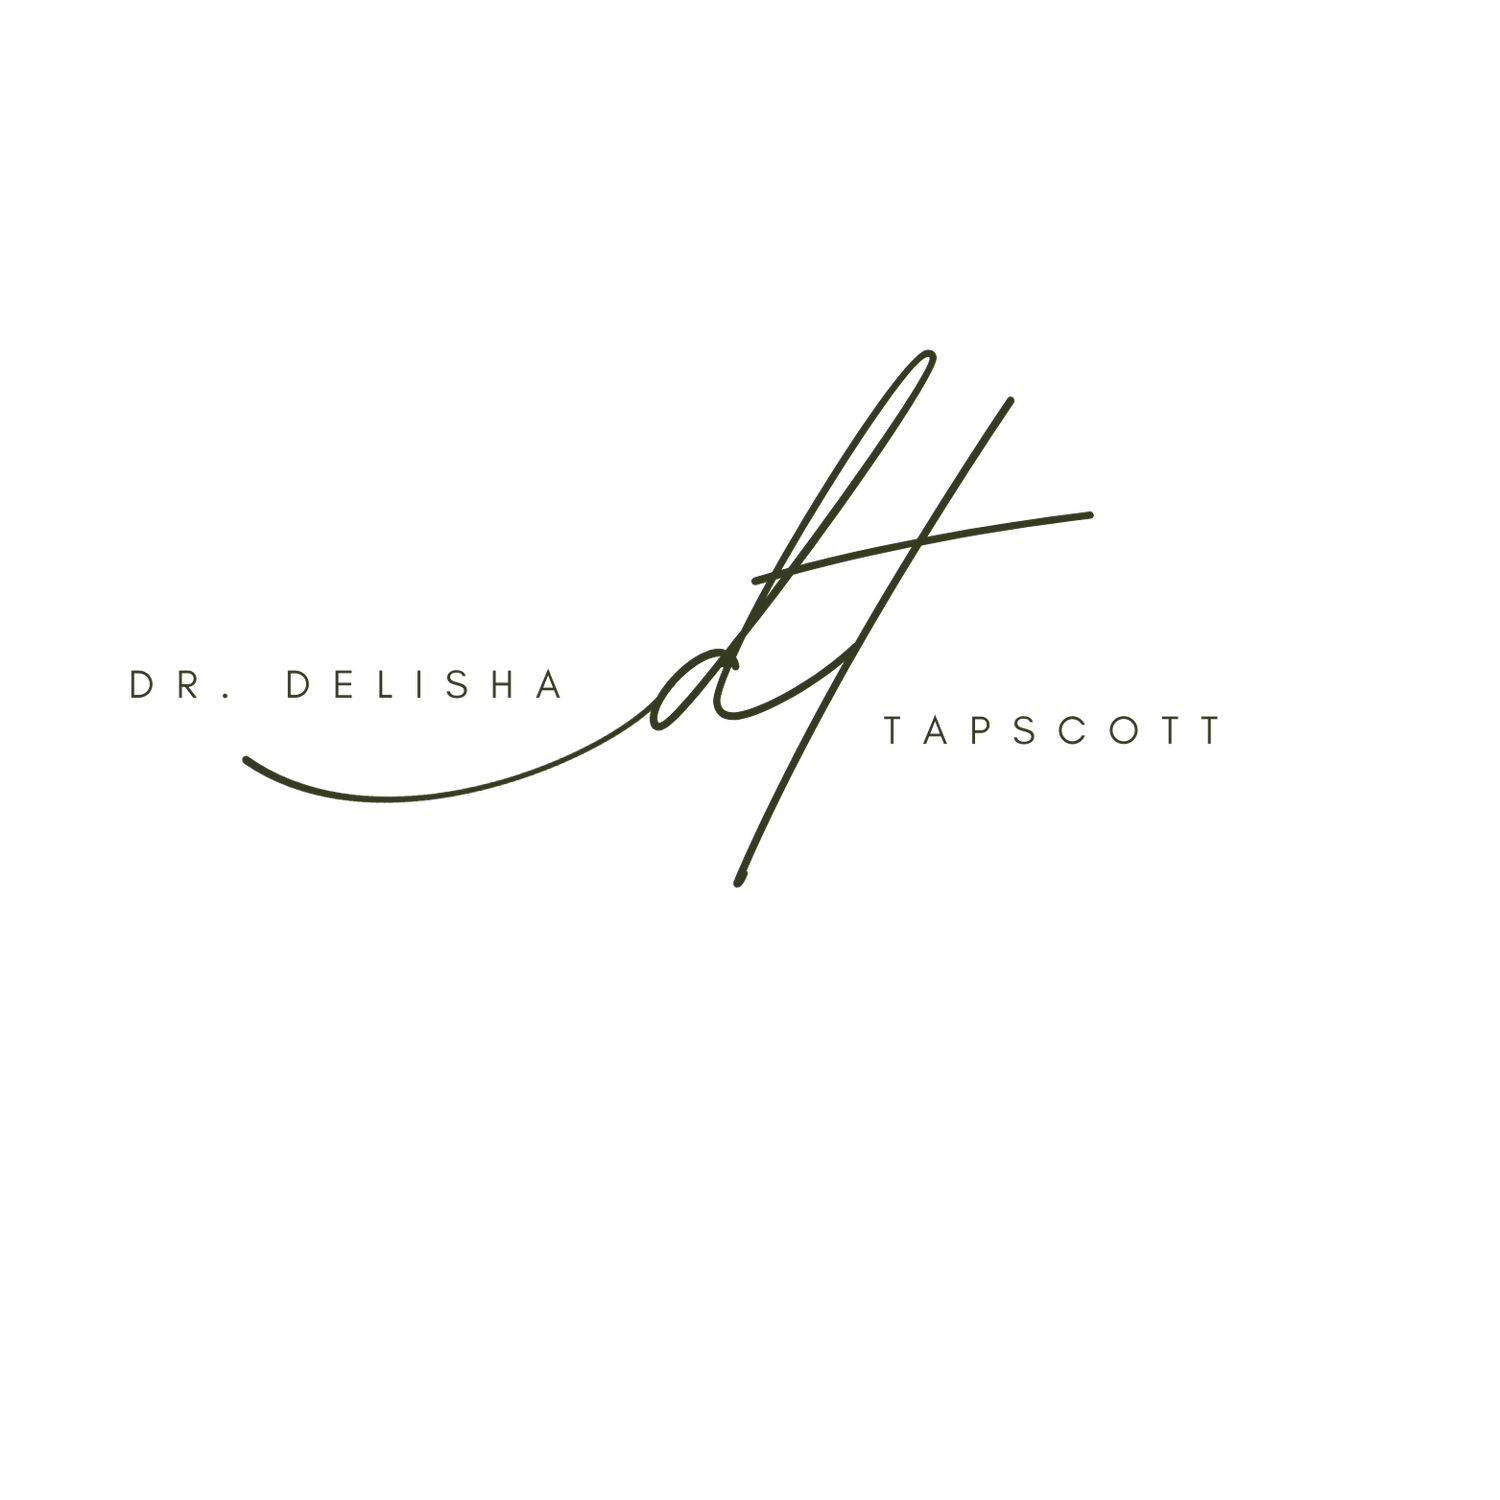 Dr. DeLisha Tapscott